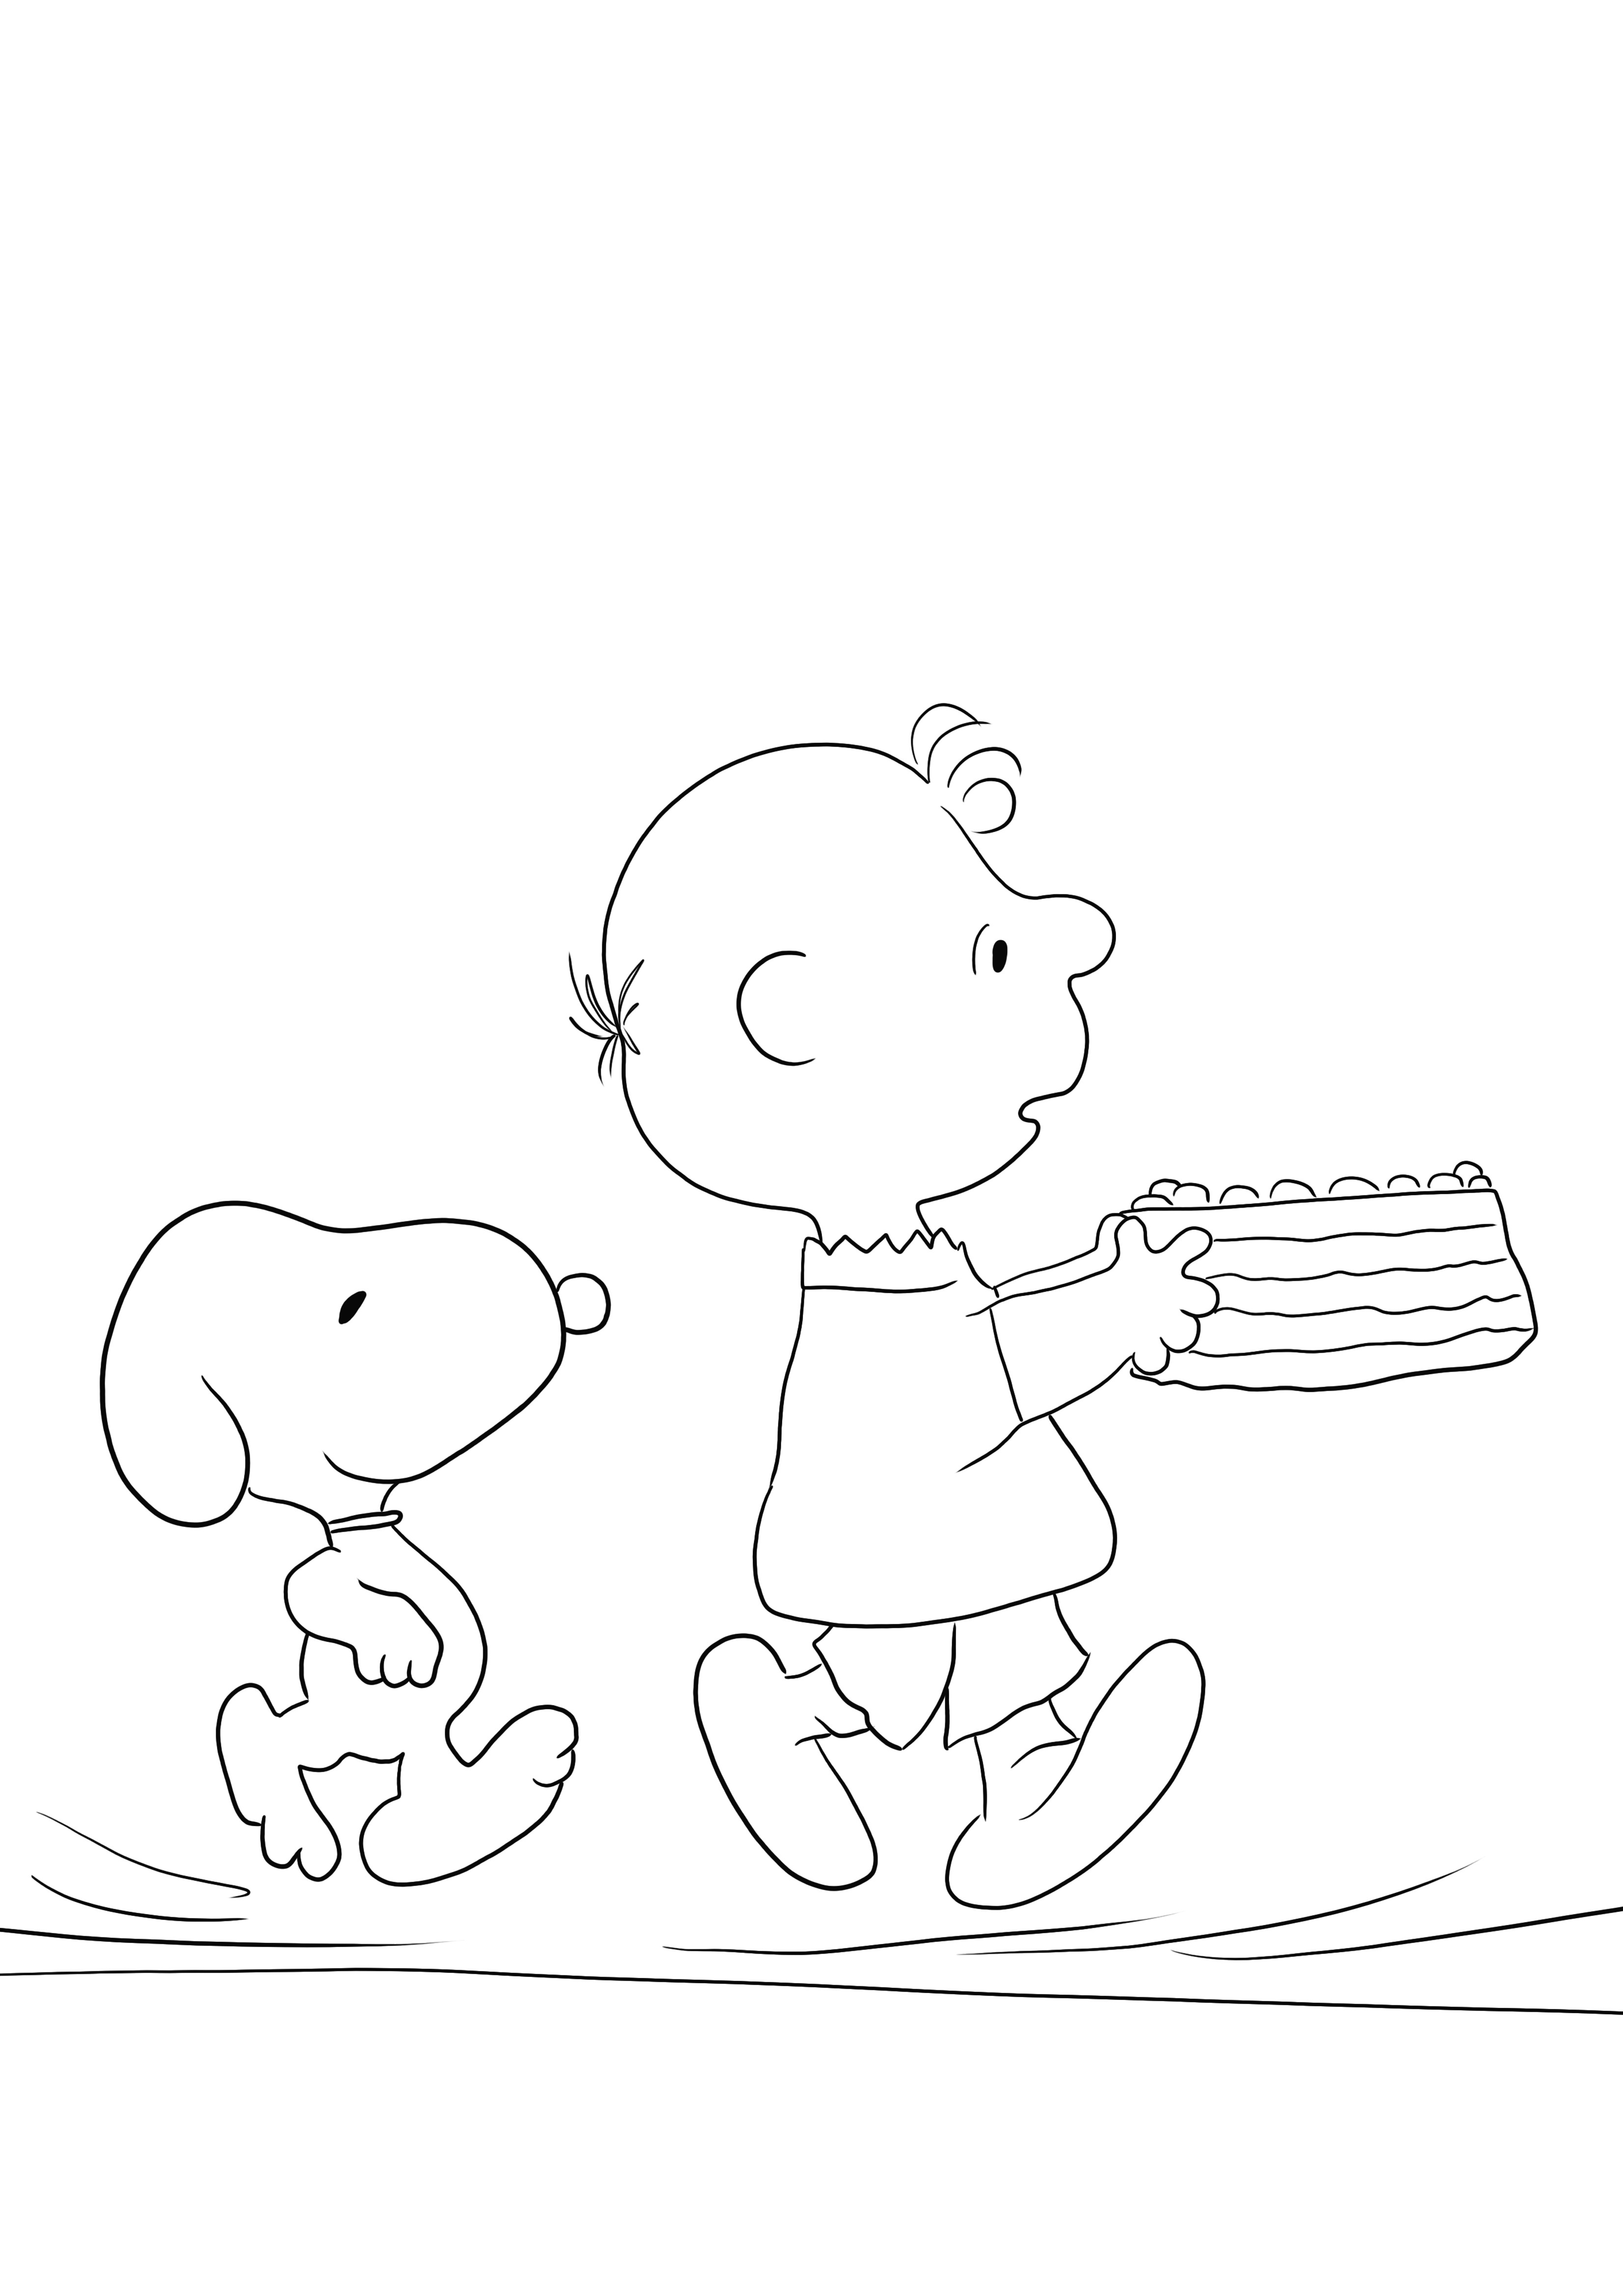 Sederhana dan gratis untuk mencetak lembar mewarnai Ulang Tahun Snoopy untuk belajar dengan menyenangkan